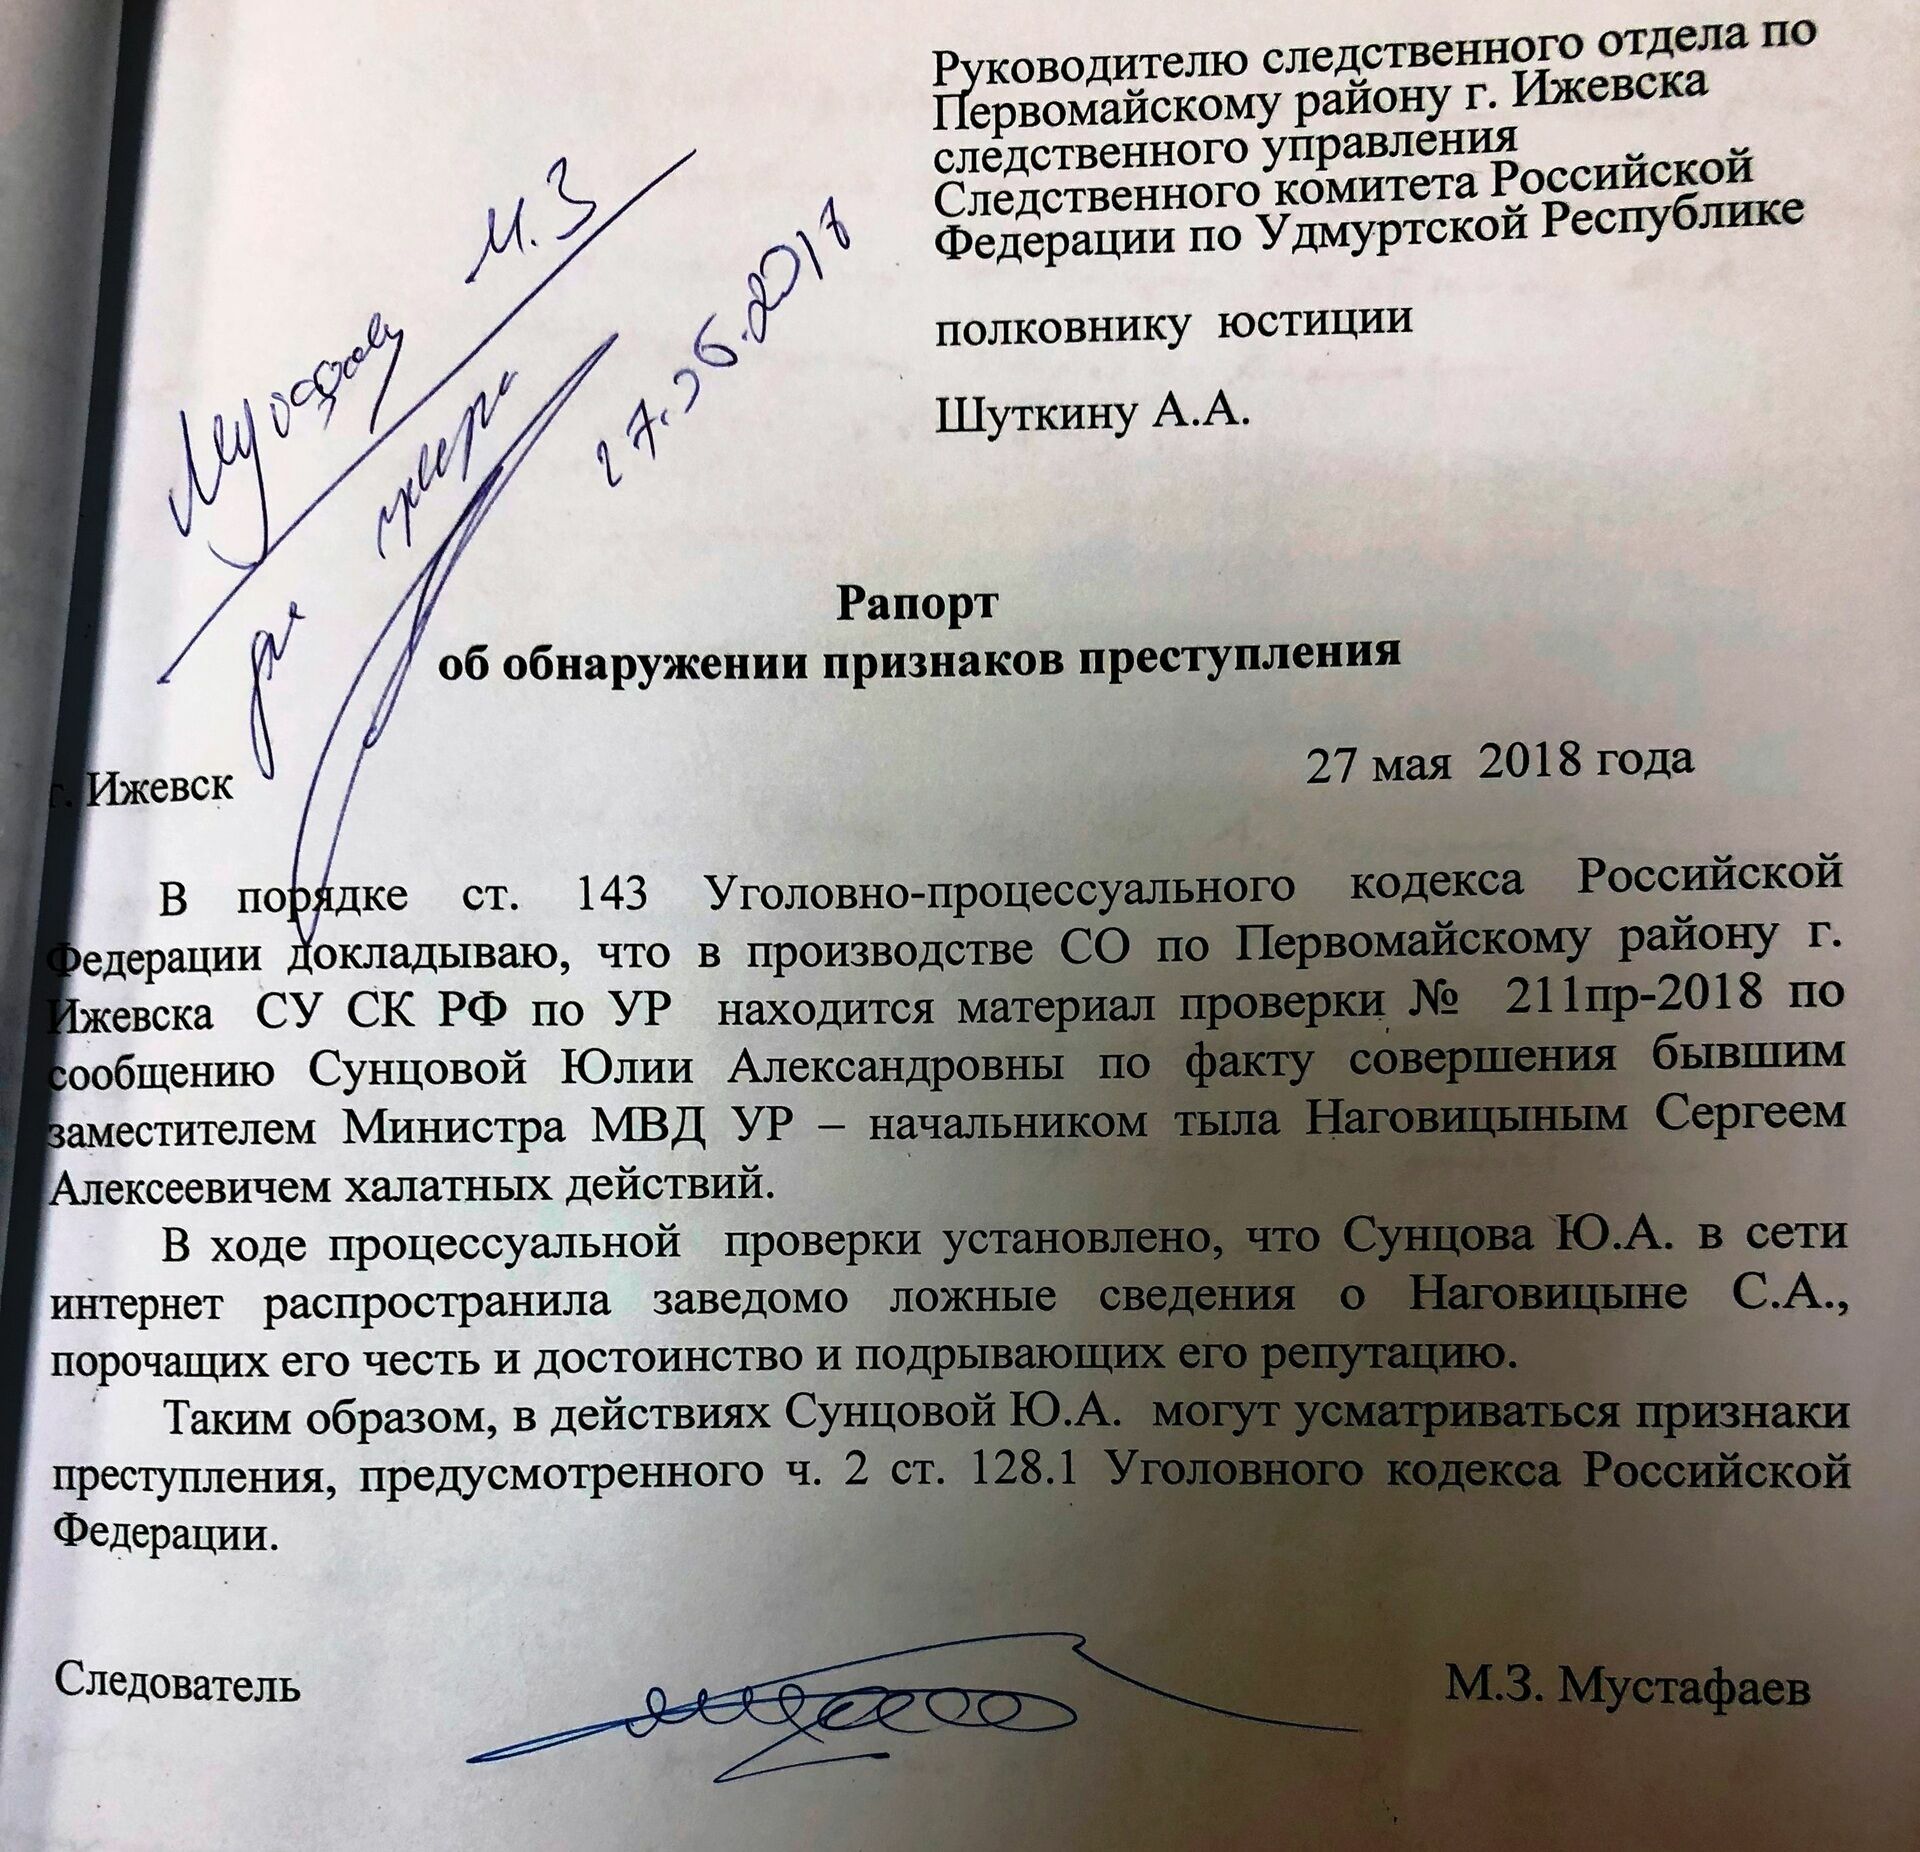 Следователя Мустафаева попросили проверить бывшего полицейского на должностные преступления. А он проверил журналиста